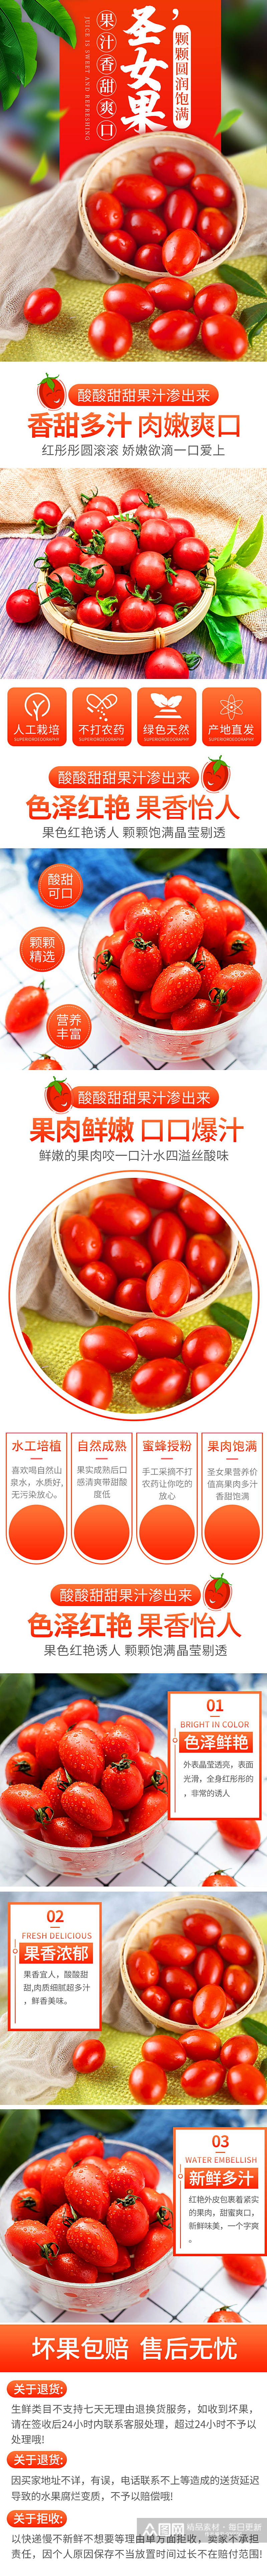 简约小清新助农果蔬圣女果番茄详情页素材